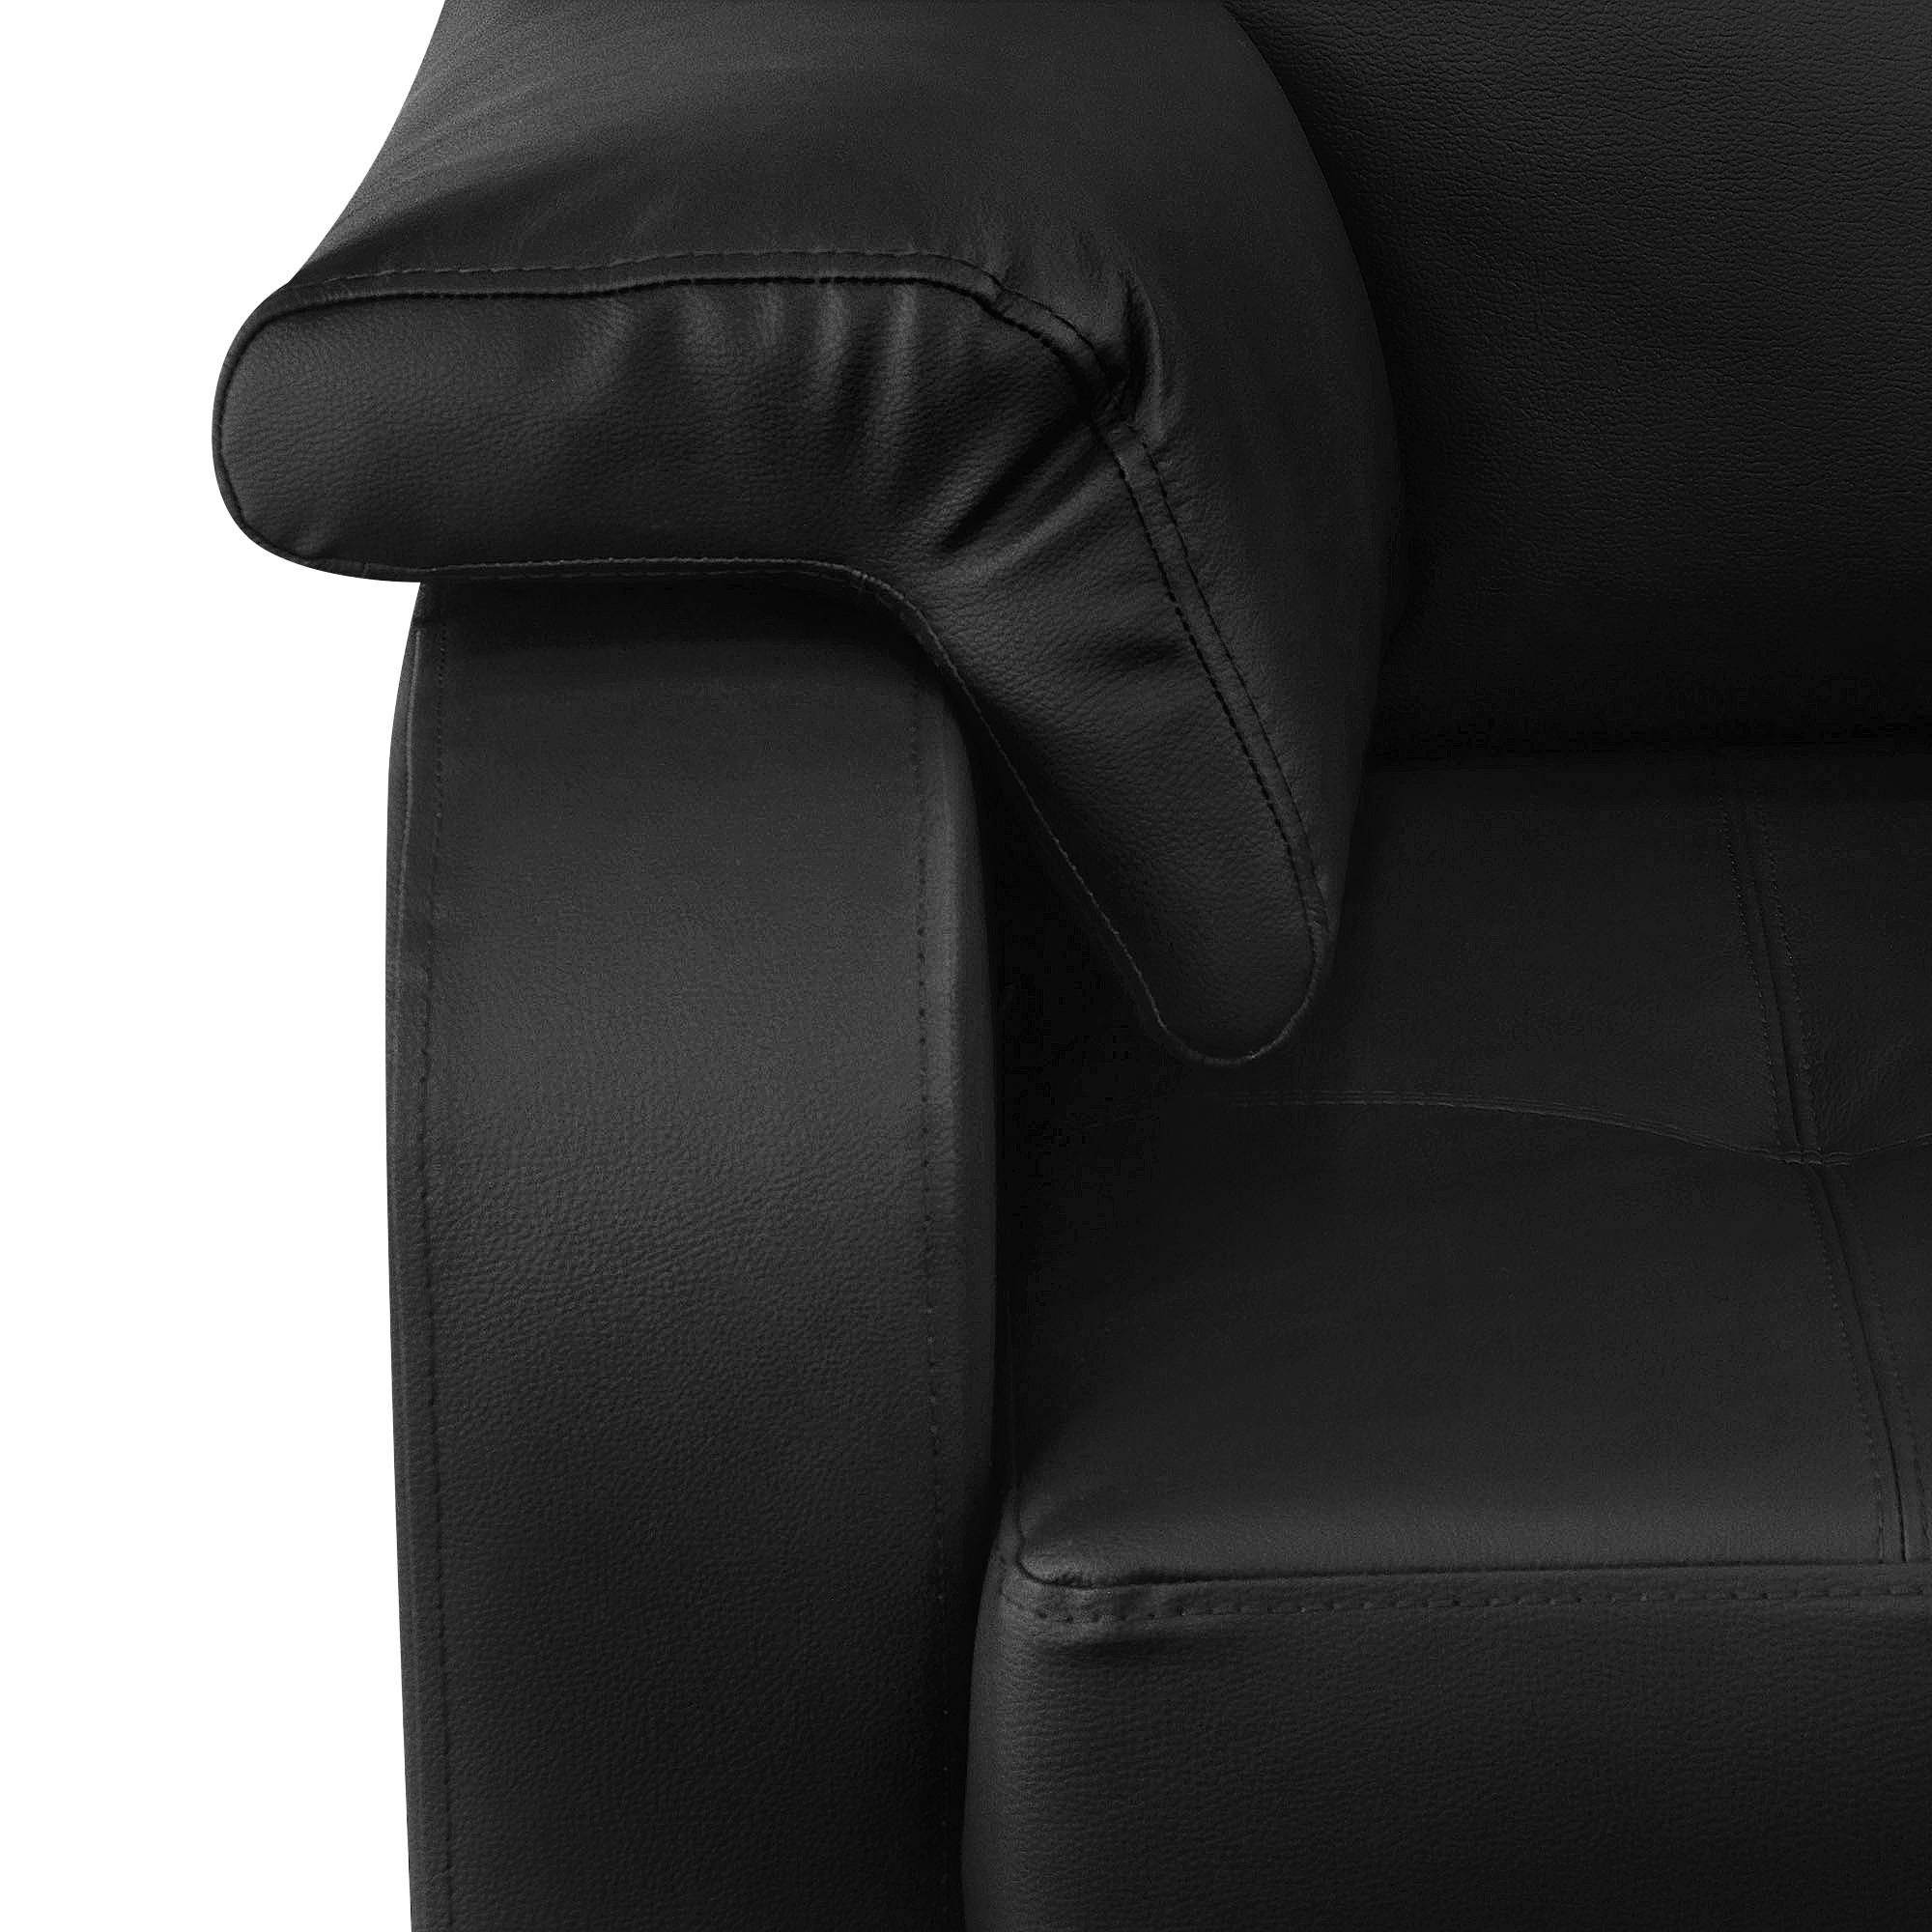 Кресло ФС Надия натуральная кожа 89x88x88 черный - фото 3